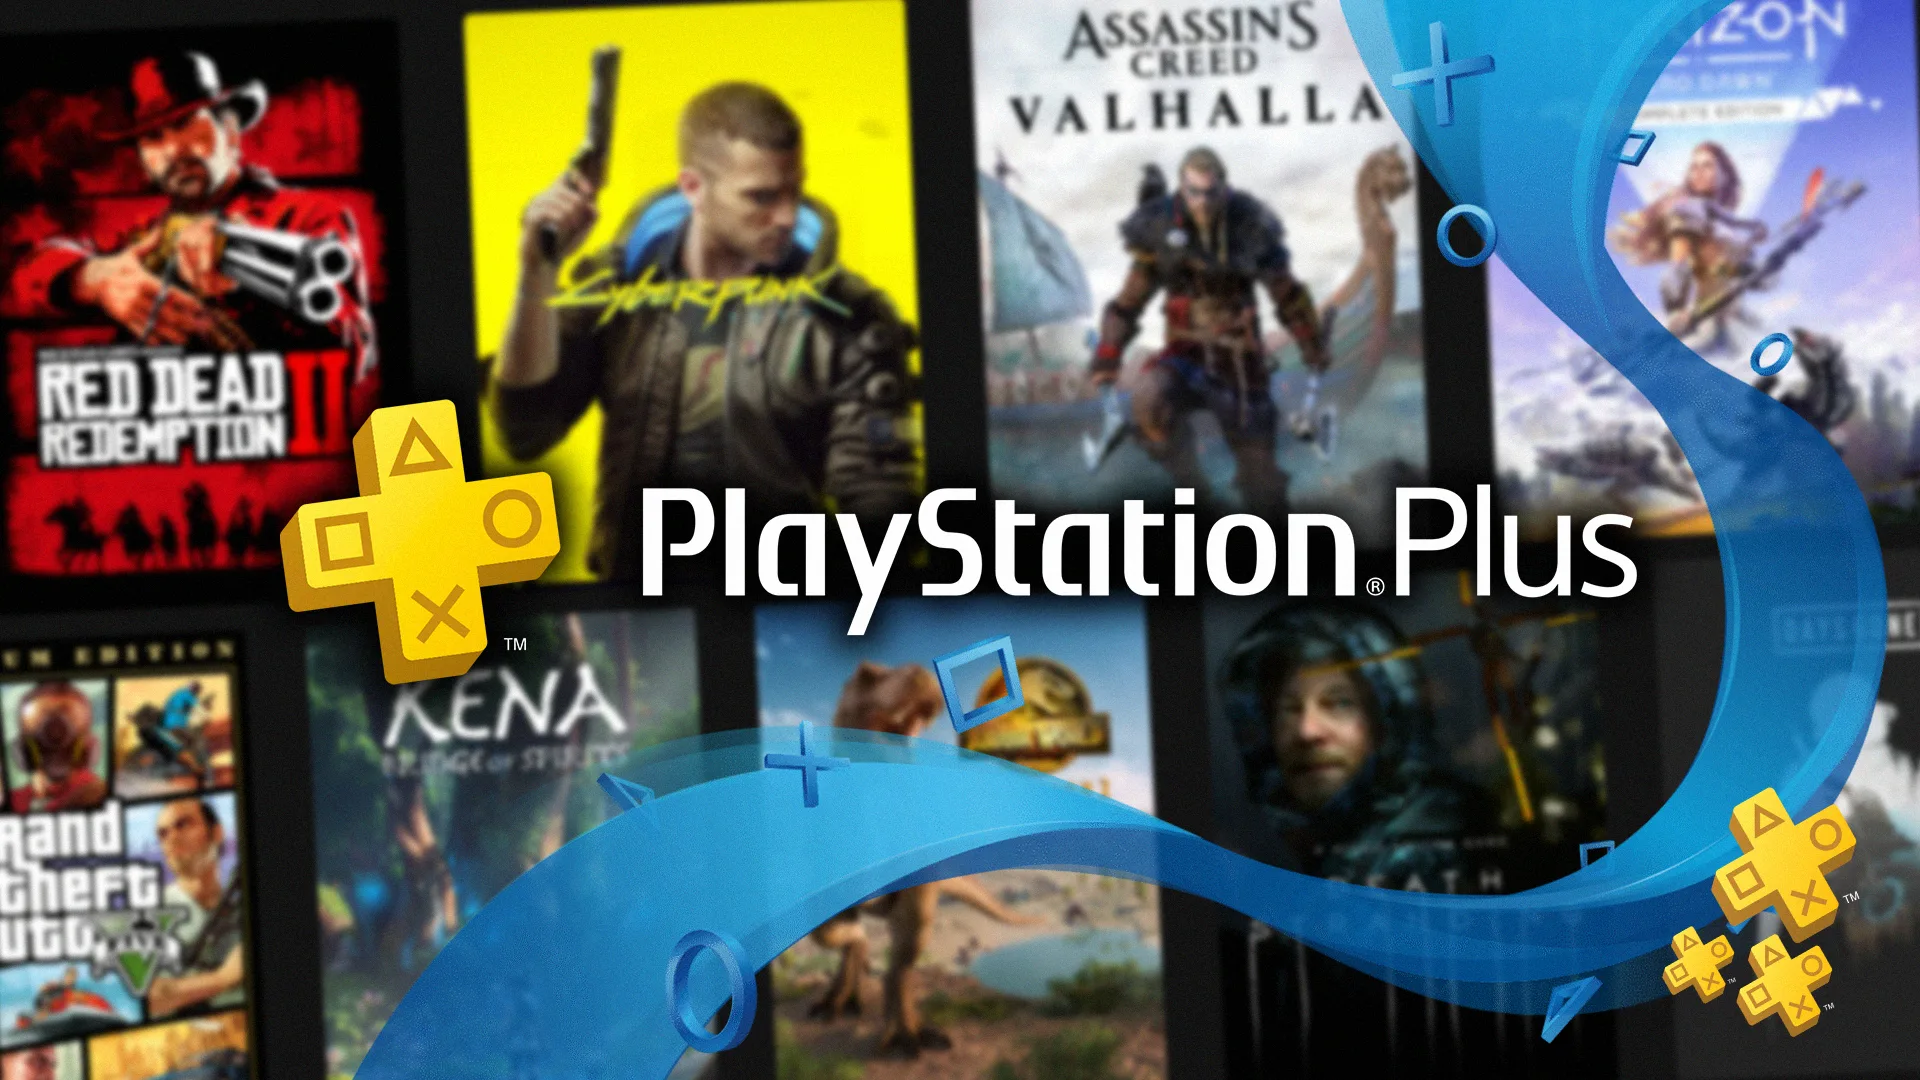 Não precisa de PS Plus; Sony oferece grande jogo em Março 2022 Viciados